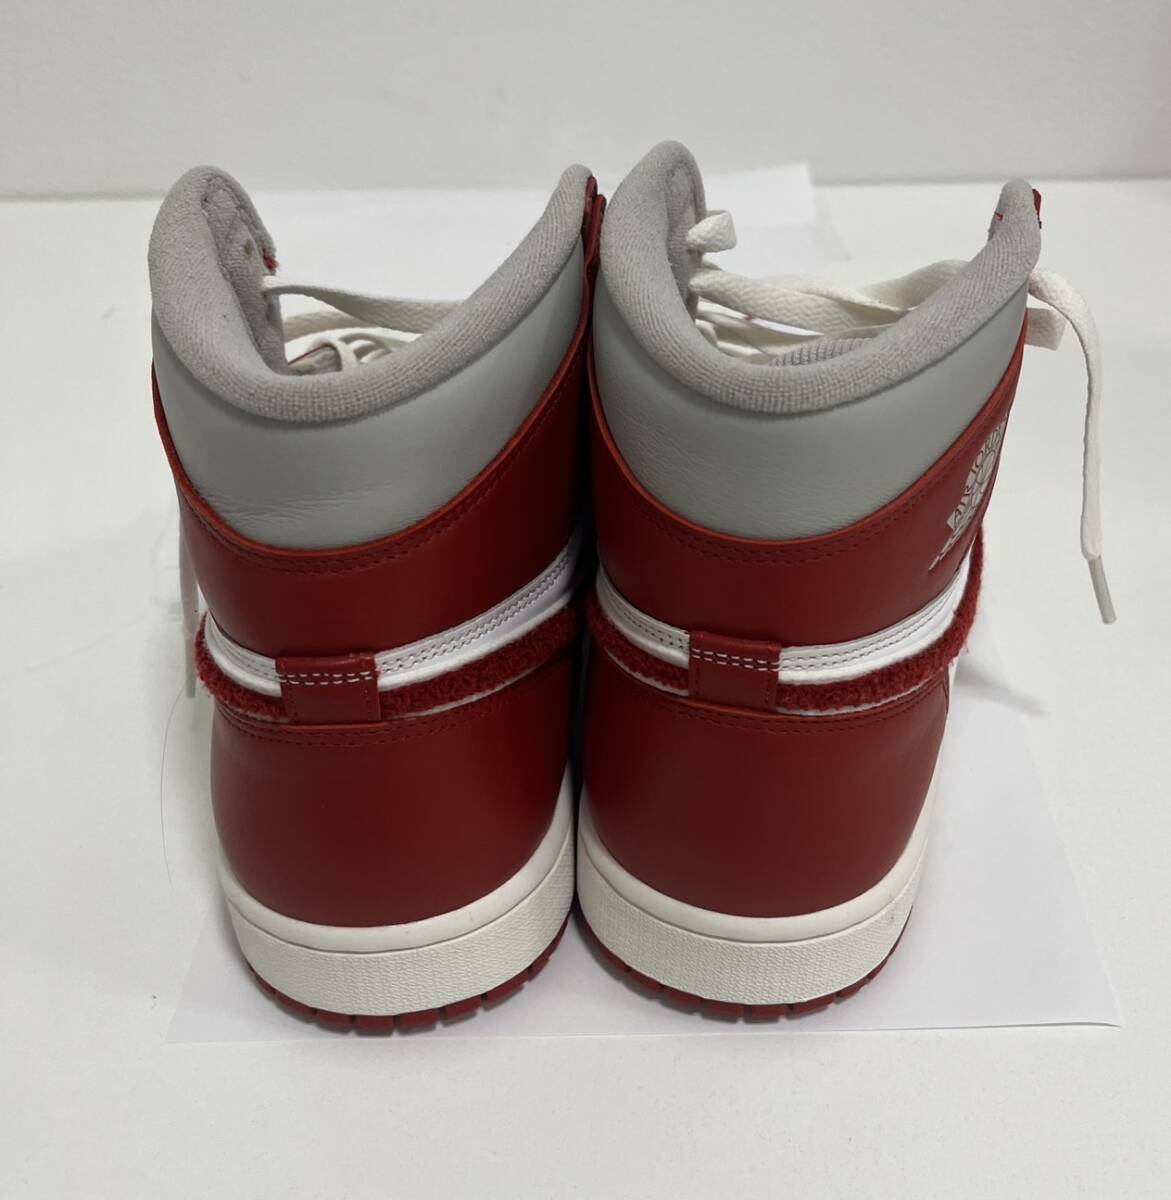 [SOB3765SG]1 иен ~NIKE Nike AIR JORDAN воздушный Jordan 27.5 см долгосрочное хранение текущее состояние товар белый красный спортивные туфли мода модный 